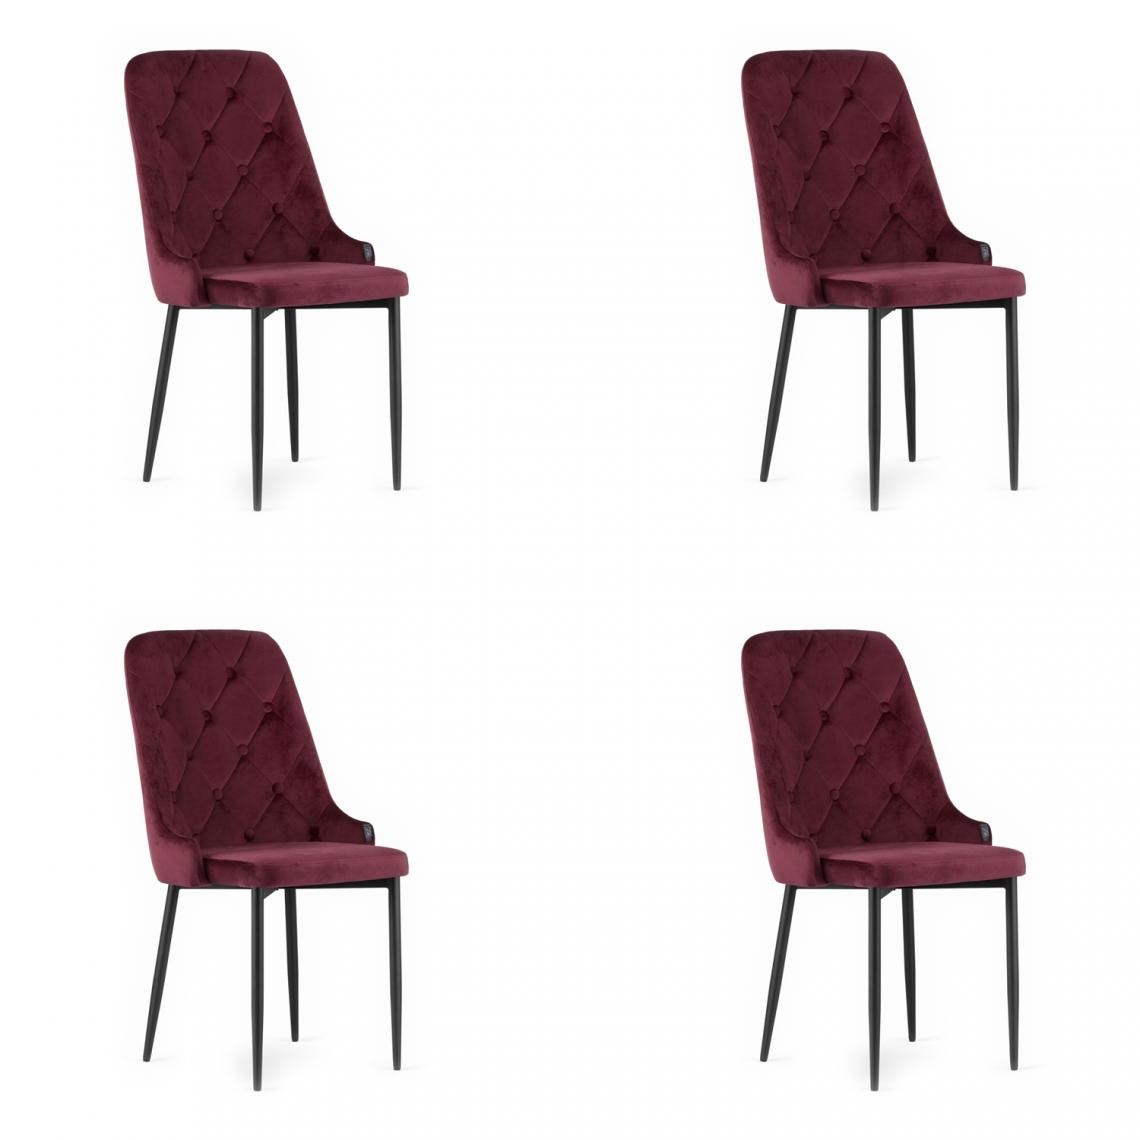 Hucoco - CAPRIU - Lot de 4 chaises en velours style glamour - 93x56x48 cm - Chaise de salle à manger - Rouge - Chaises